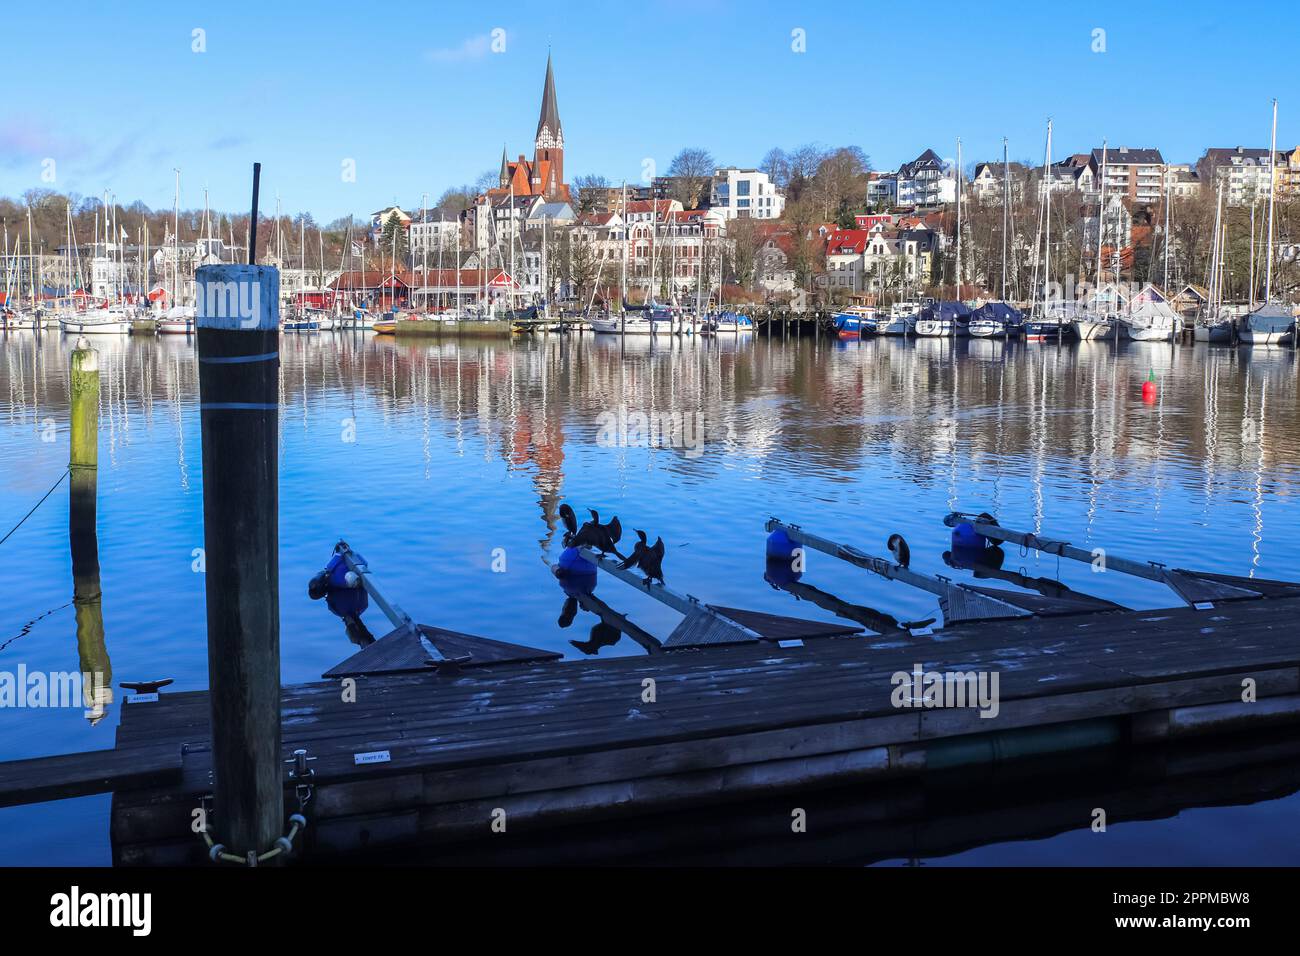 Flensburg, Deutschland - 03. März 2023: Blick auf den historischen Hafen von Flensburg mit einigen Schiffen. Stockfoto